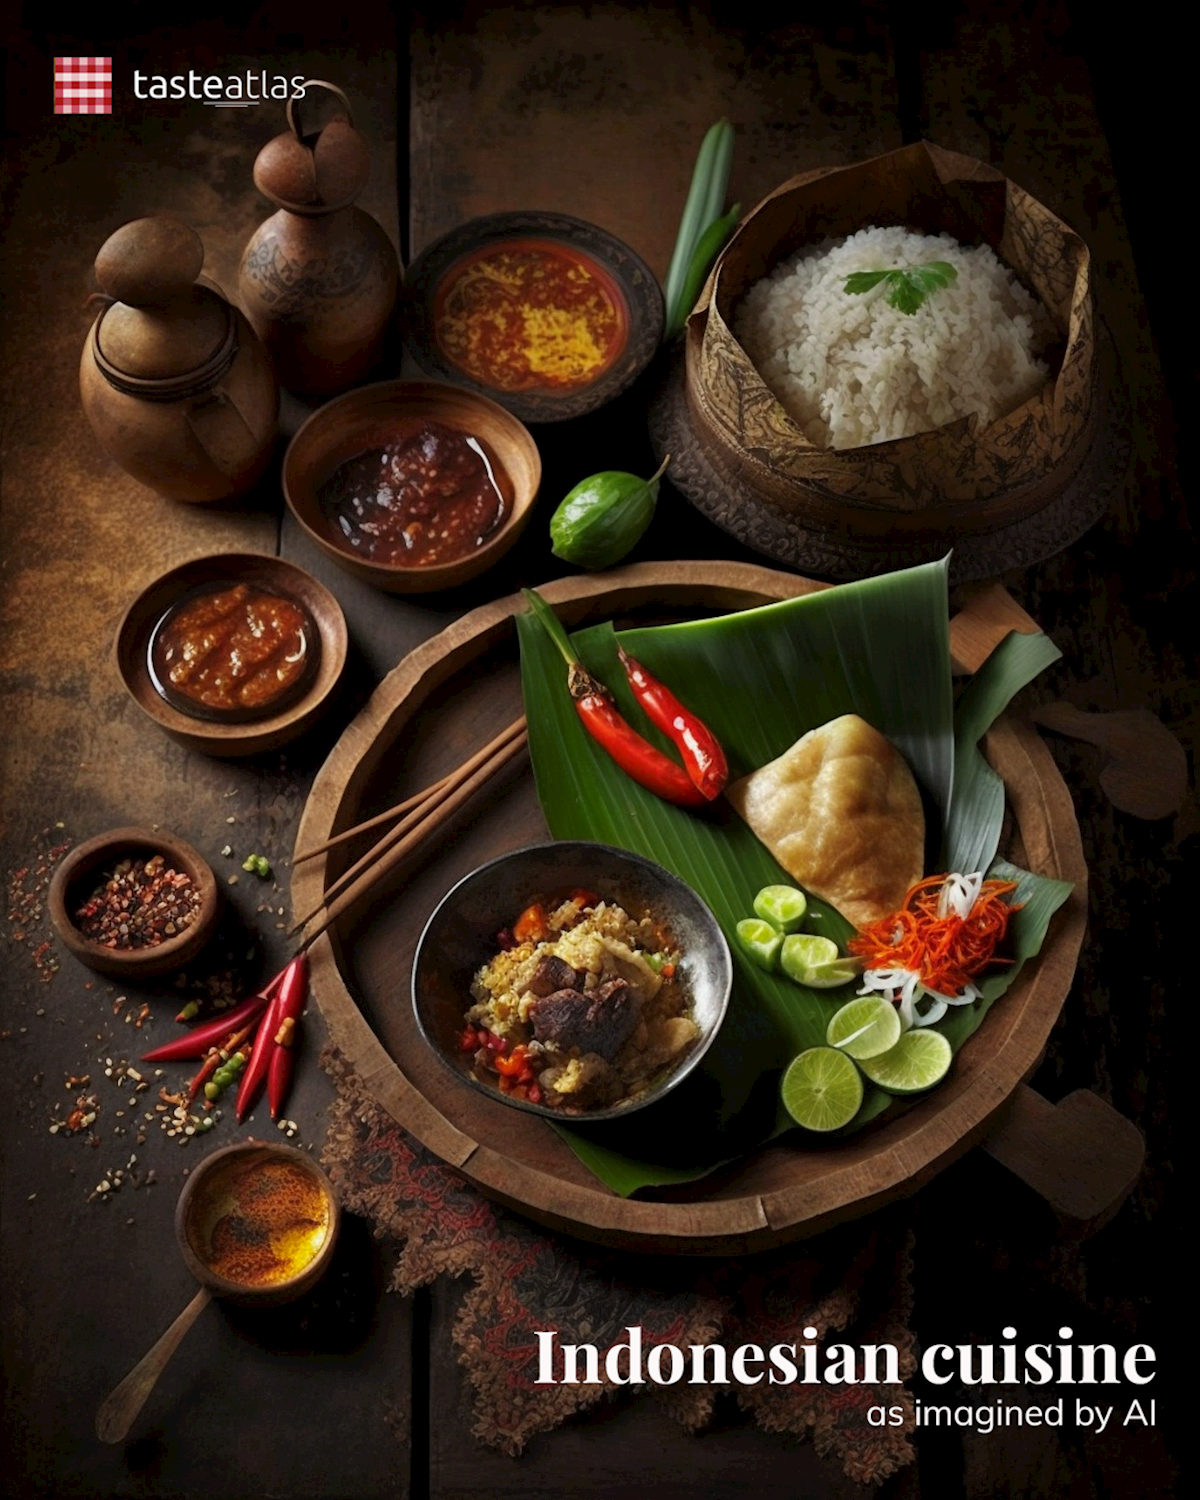 Prompt: Imagine Indonesian cuisine